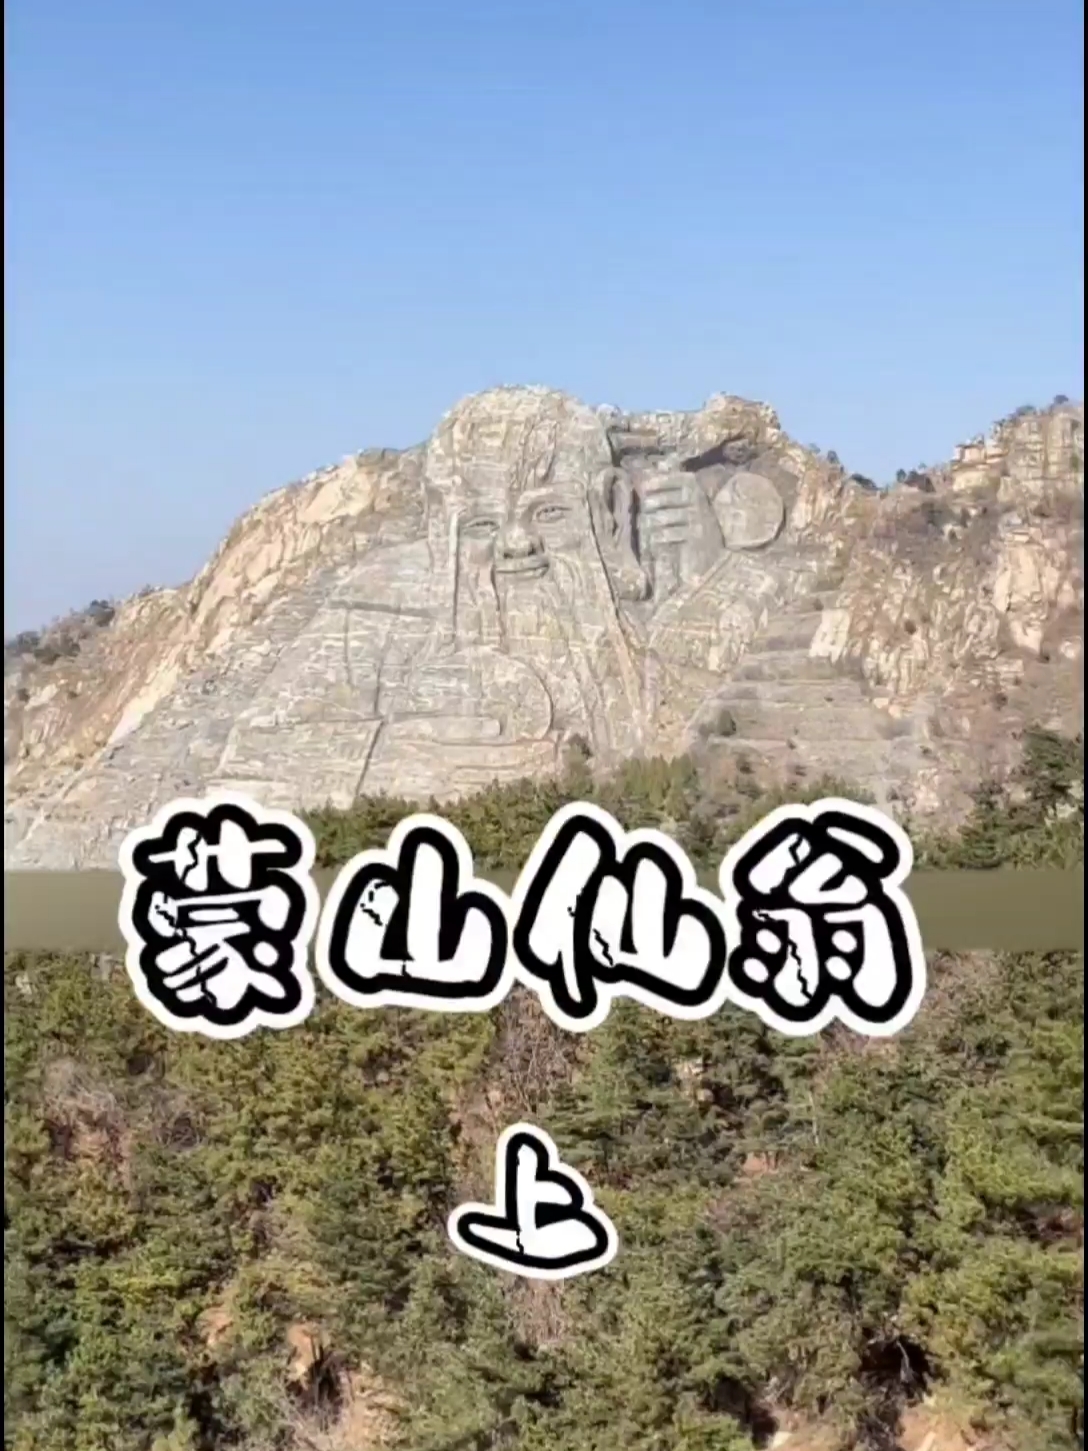 世界上最大的寿星居然藏在中国#旅游推荐官 #旅游达人带你游 #世界上最大寿星 #广西旅游 #蒙山大佛